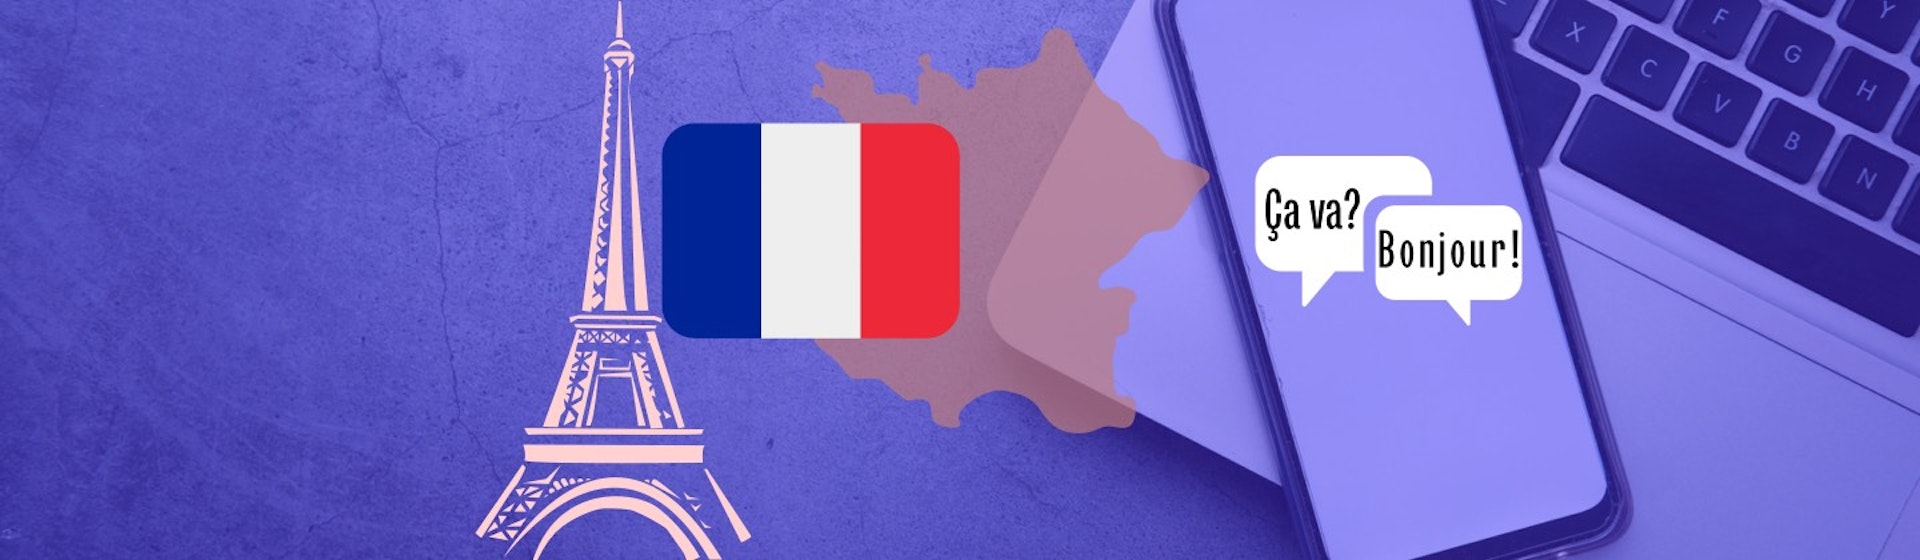 10 apps para aprender francés y pronunciar “croissant” correctamente